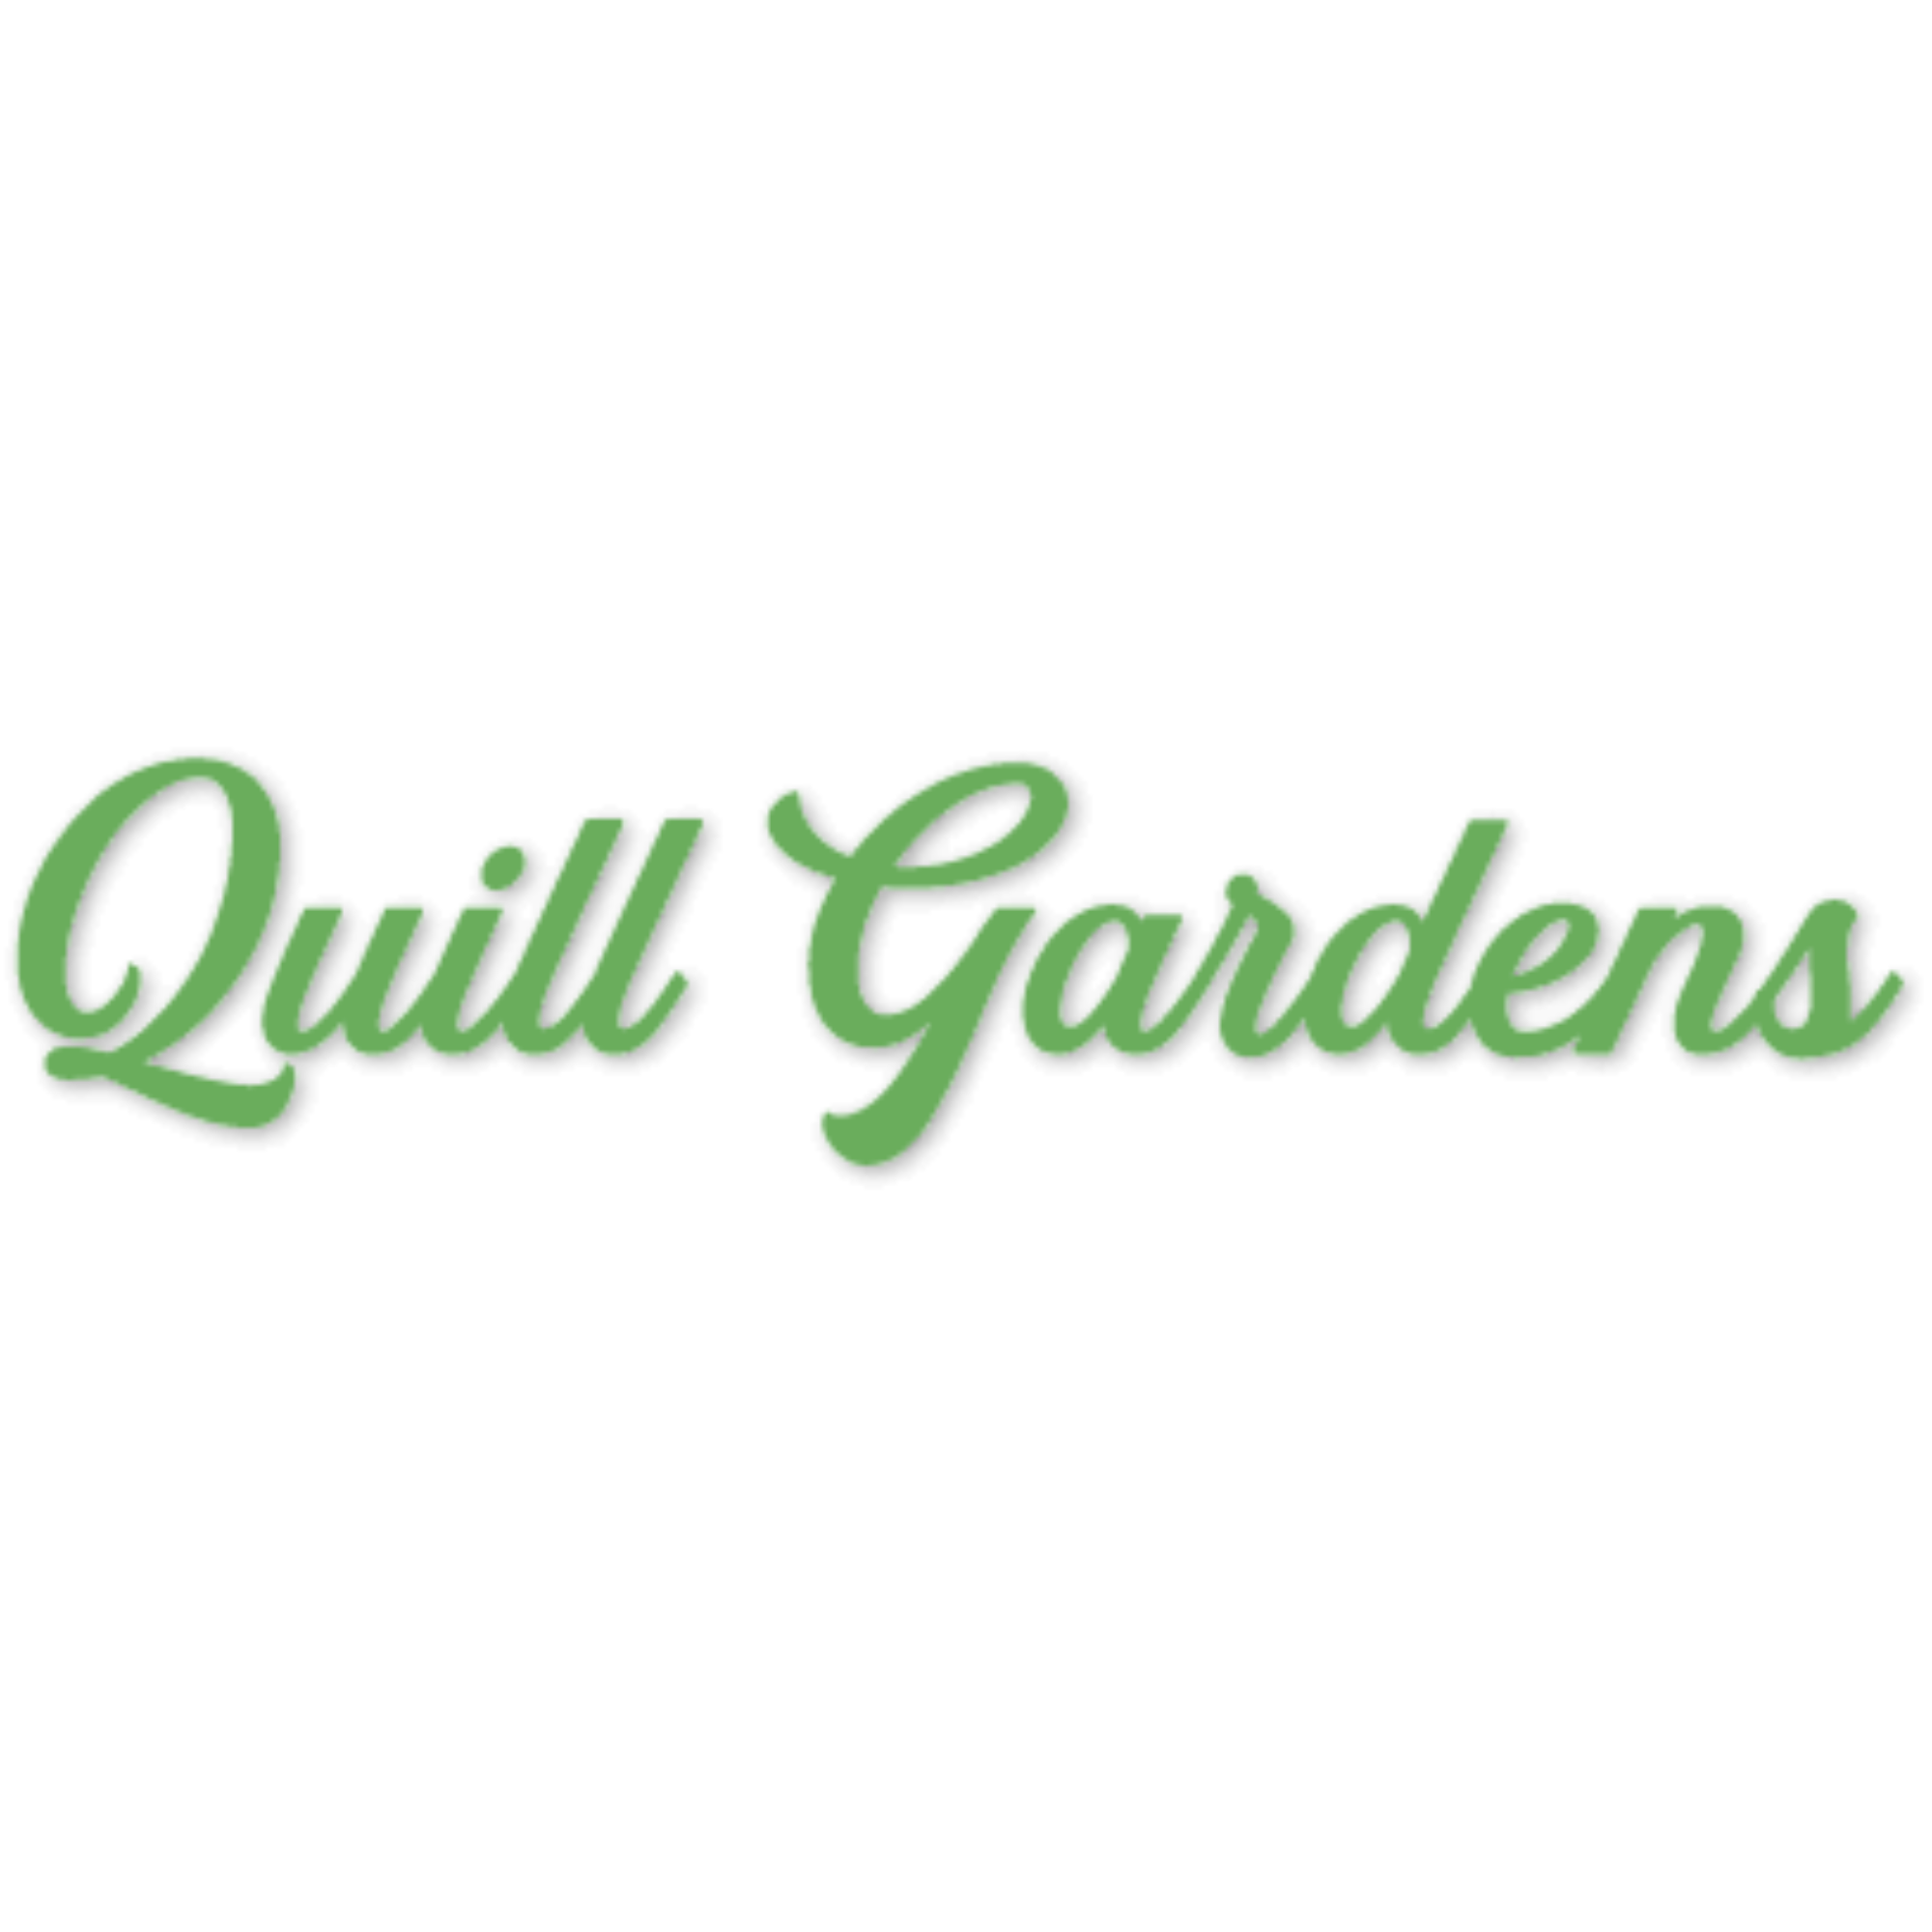 Quill Gardens Boutique Hotel, St. Eustatius